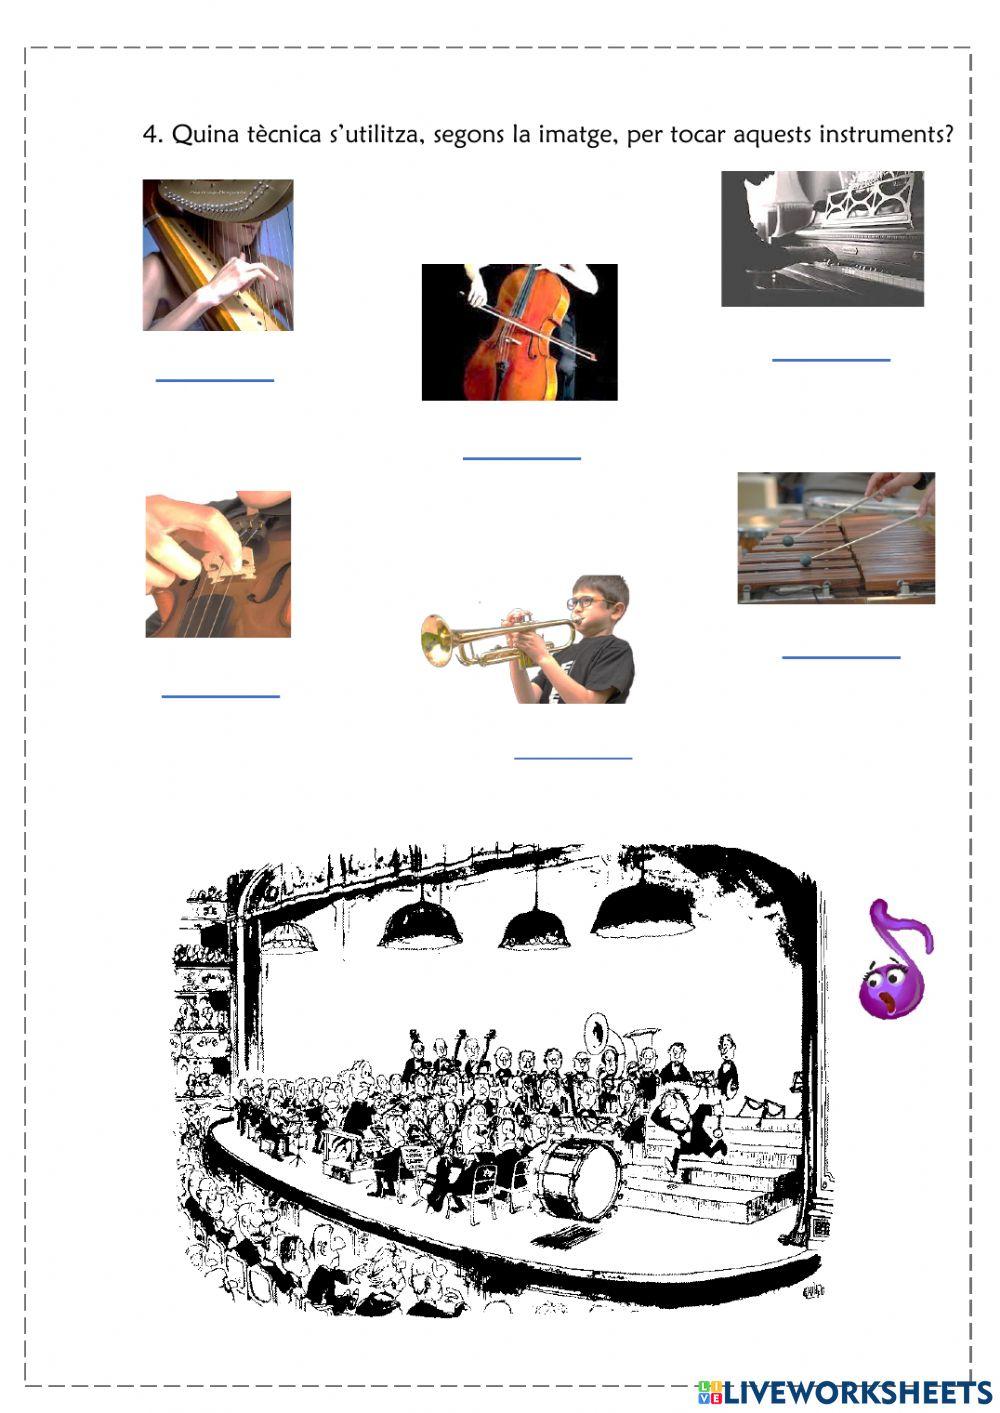 Instruments musicals, reconeixement i característiques